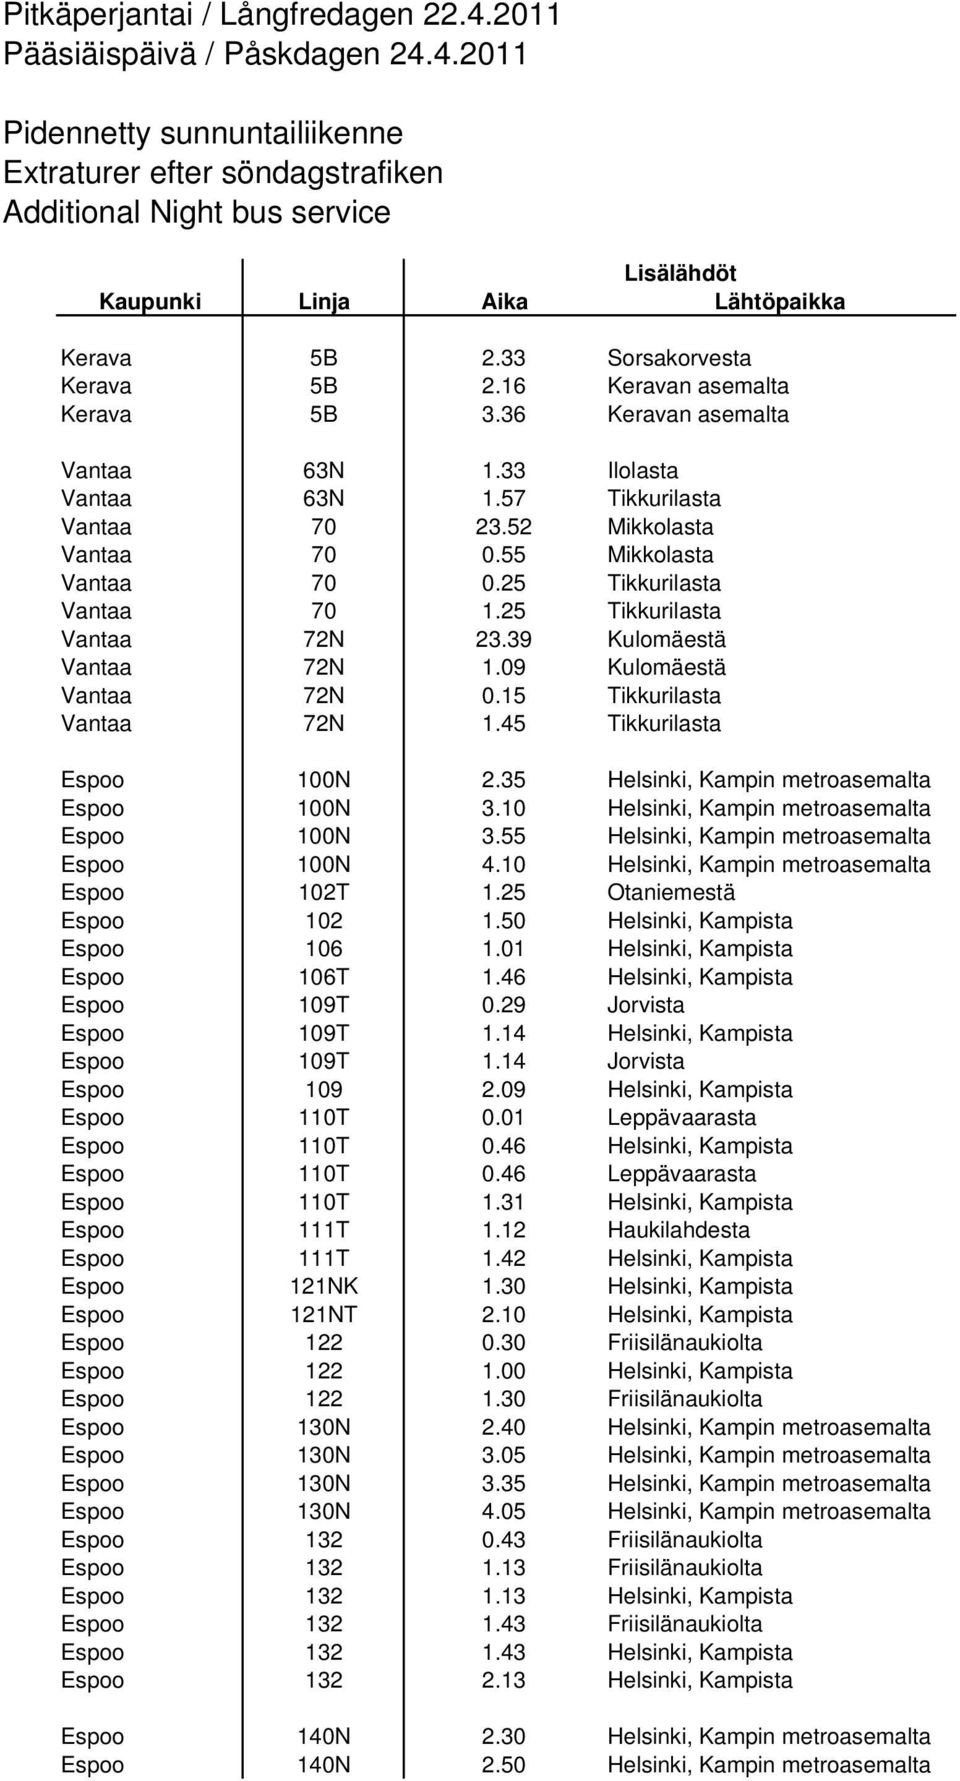 25 Tikkurilasta Vantaa 70 1.25 Tikkurilasta Vantaa 72N 23.39 Kulomäestä Vantaa 72N 1.09 Kulomäestä Vantaa 72N 0.15 Tikkurilasta Vantaa 72N 1.45 Tikkurilasta Espoo 100N 2.